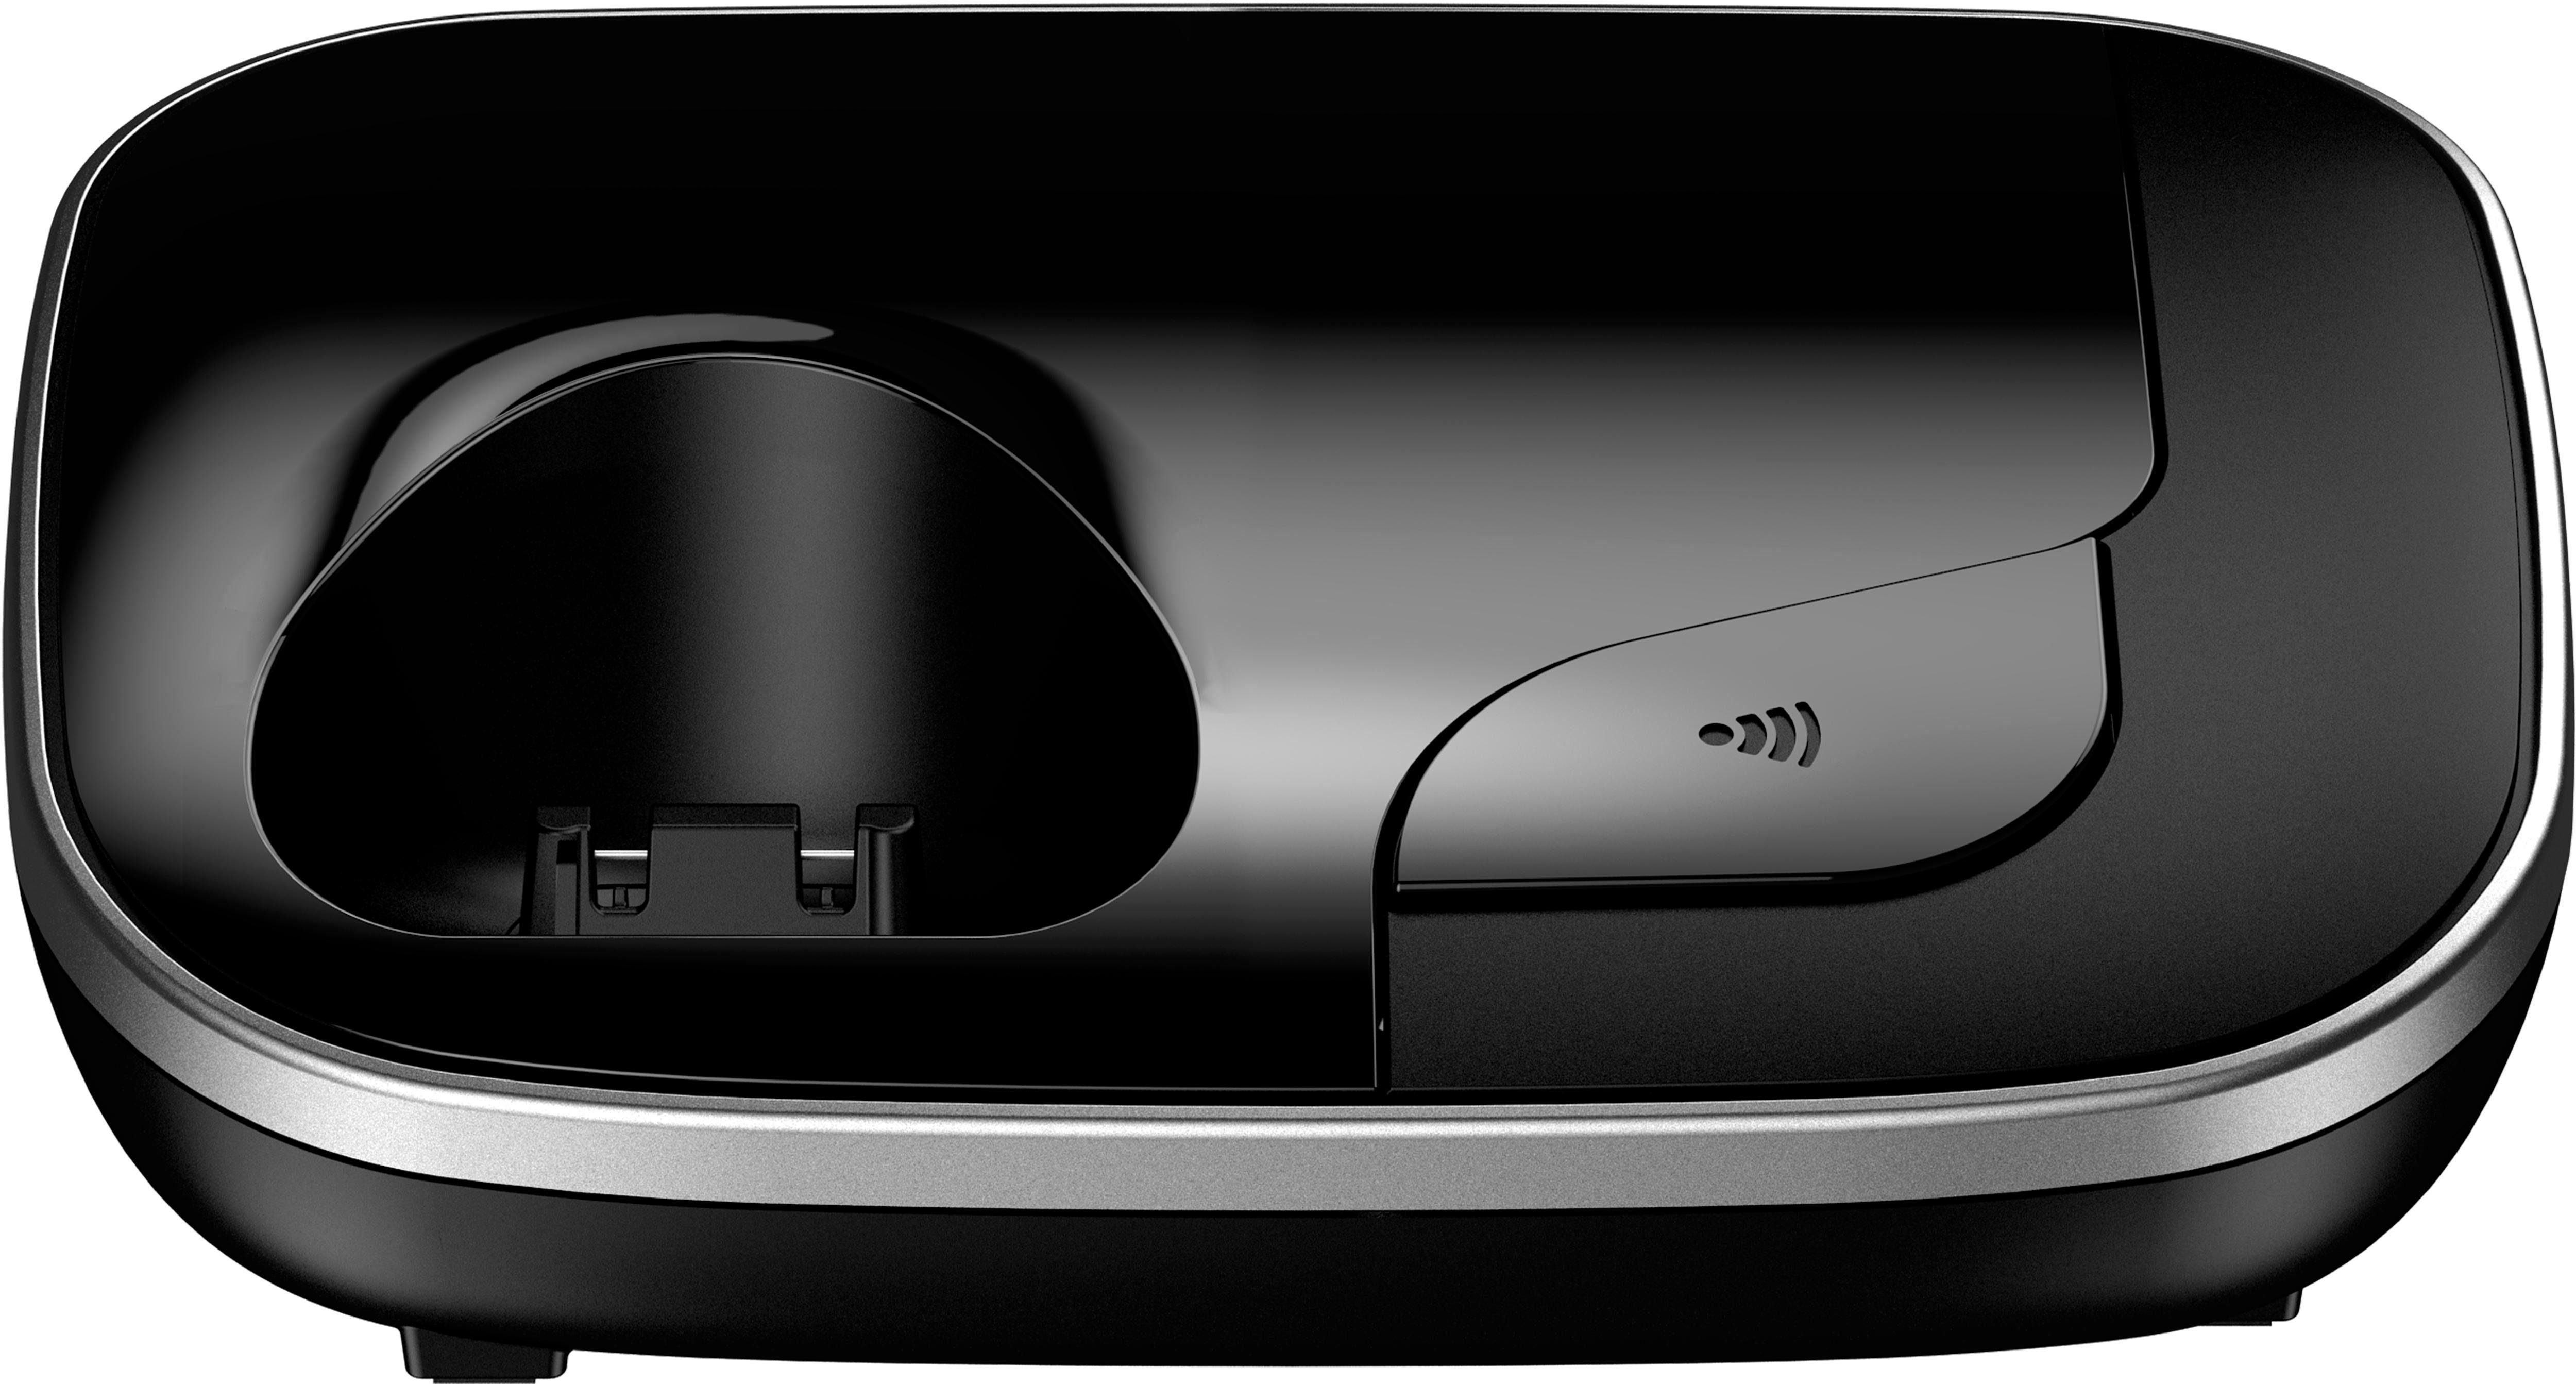 Panasonic KX-TGJ310 Schnurloses (Mobilteile: Freisprechen) DECT-Telefon 1, Weckfunktion, schwarz